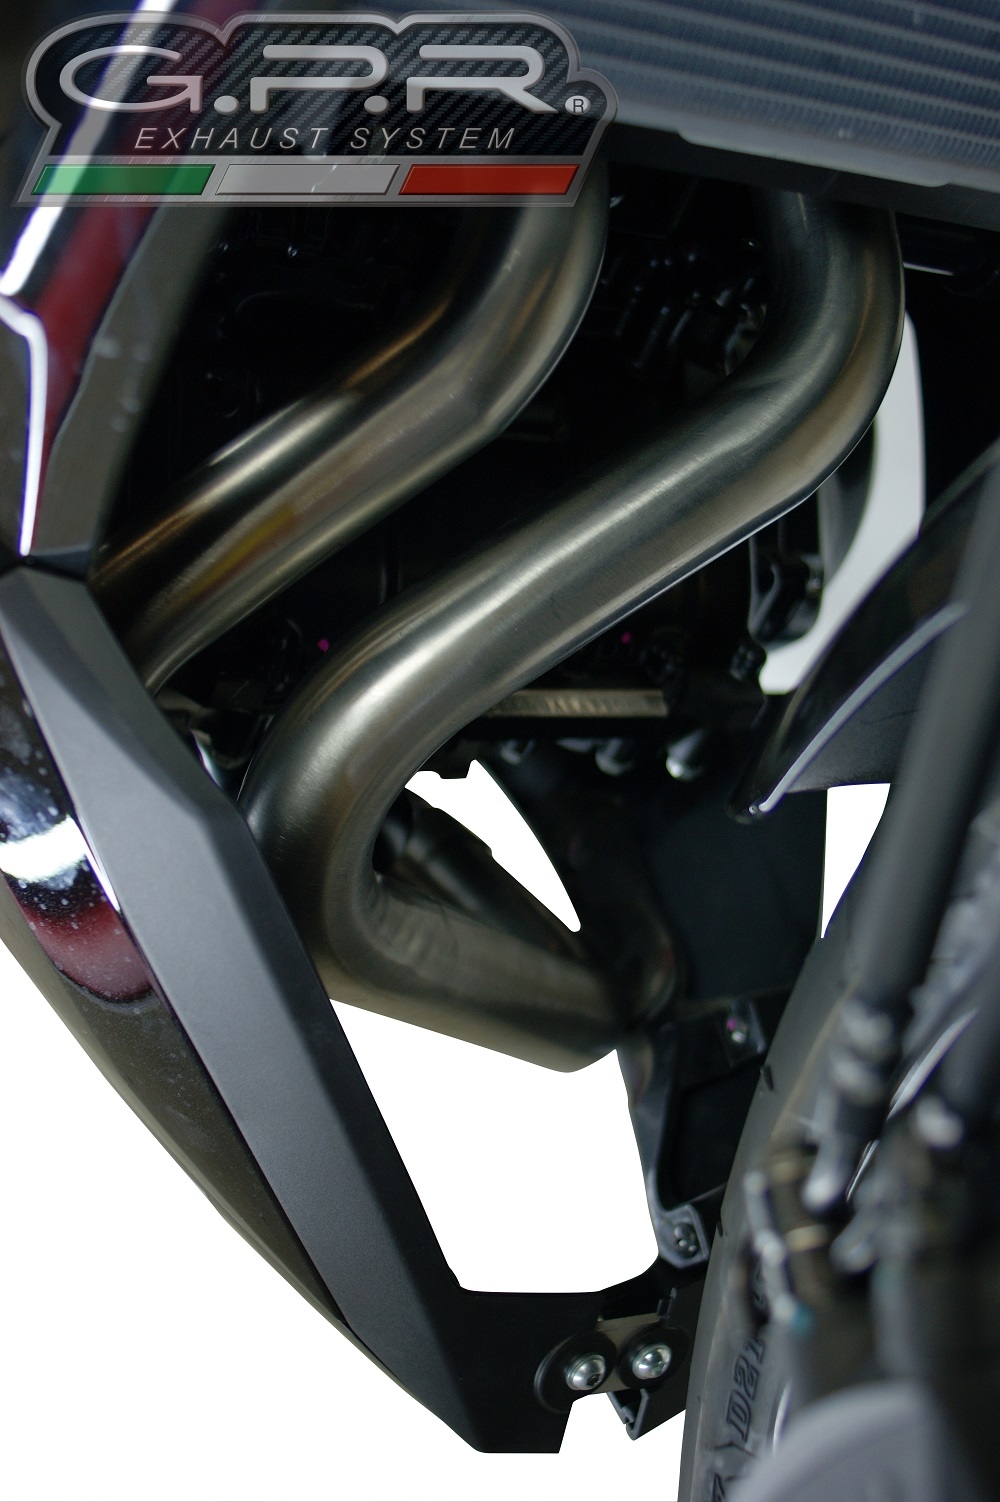 Scarico compatibile con Kawasaki Ninja 650 2017-2020, GP Evo4 Titanium, Scarico completo omologato,fornito con db killer estraibile,catalizzatore e collettore